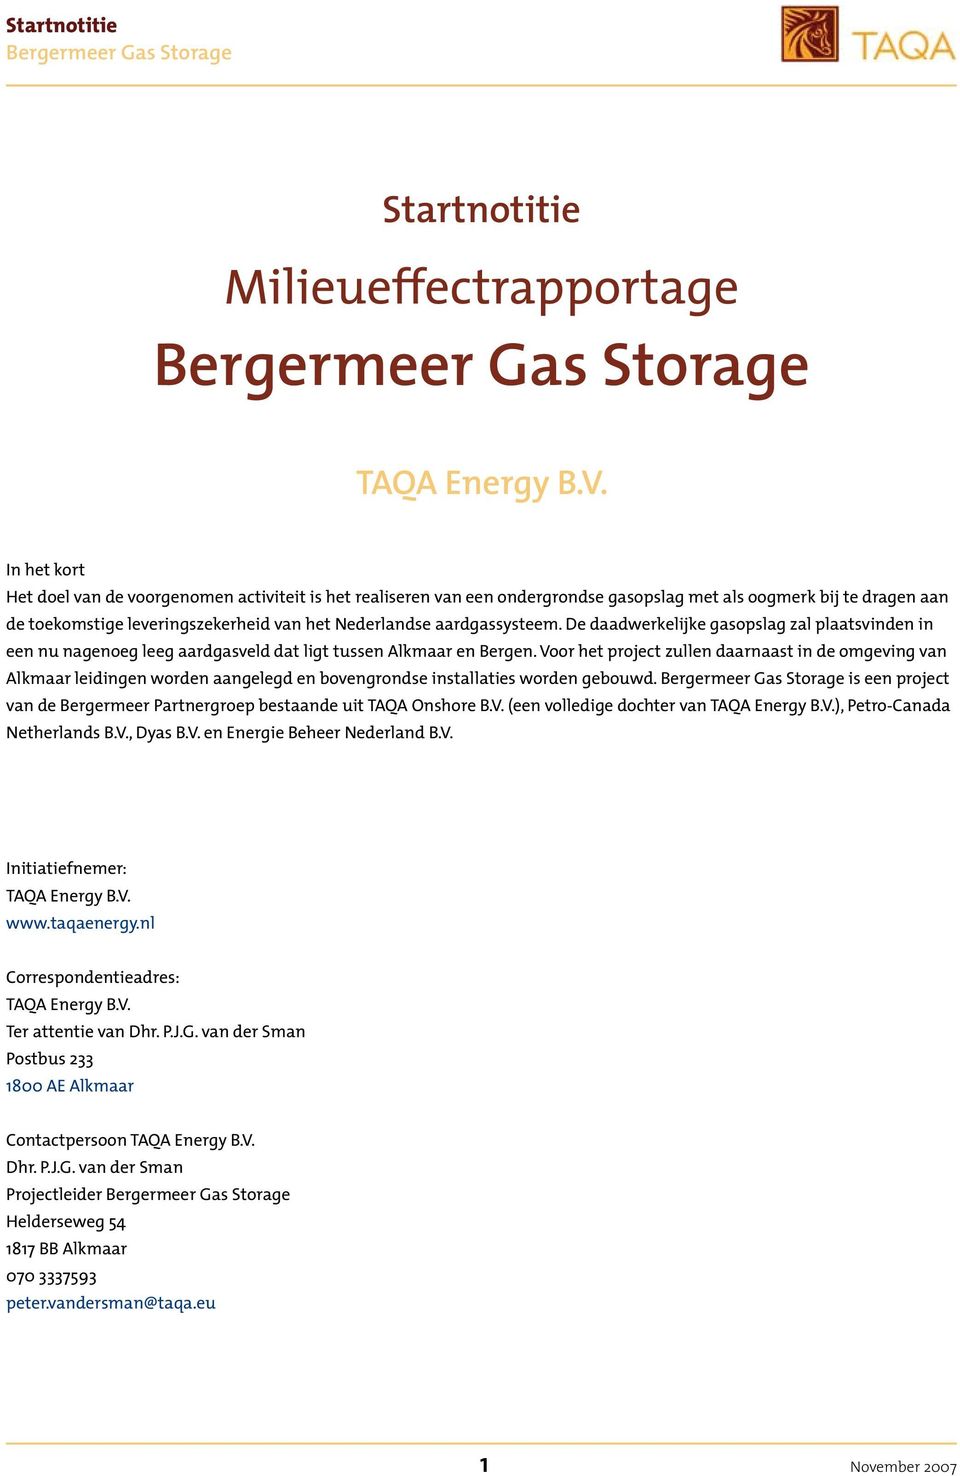 aardgassysteem. De daadwerkelijke gasopslag zal plaatsvinden in een nu nagenoeg leeg aardgasveld dat ligt tussen Alkmaar en Bergen.